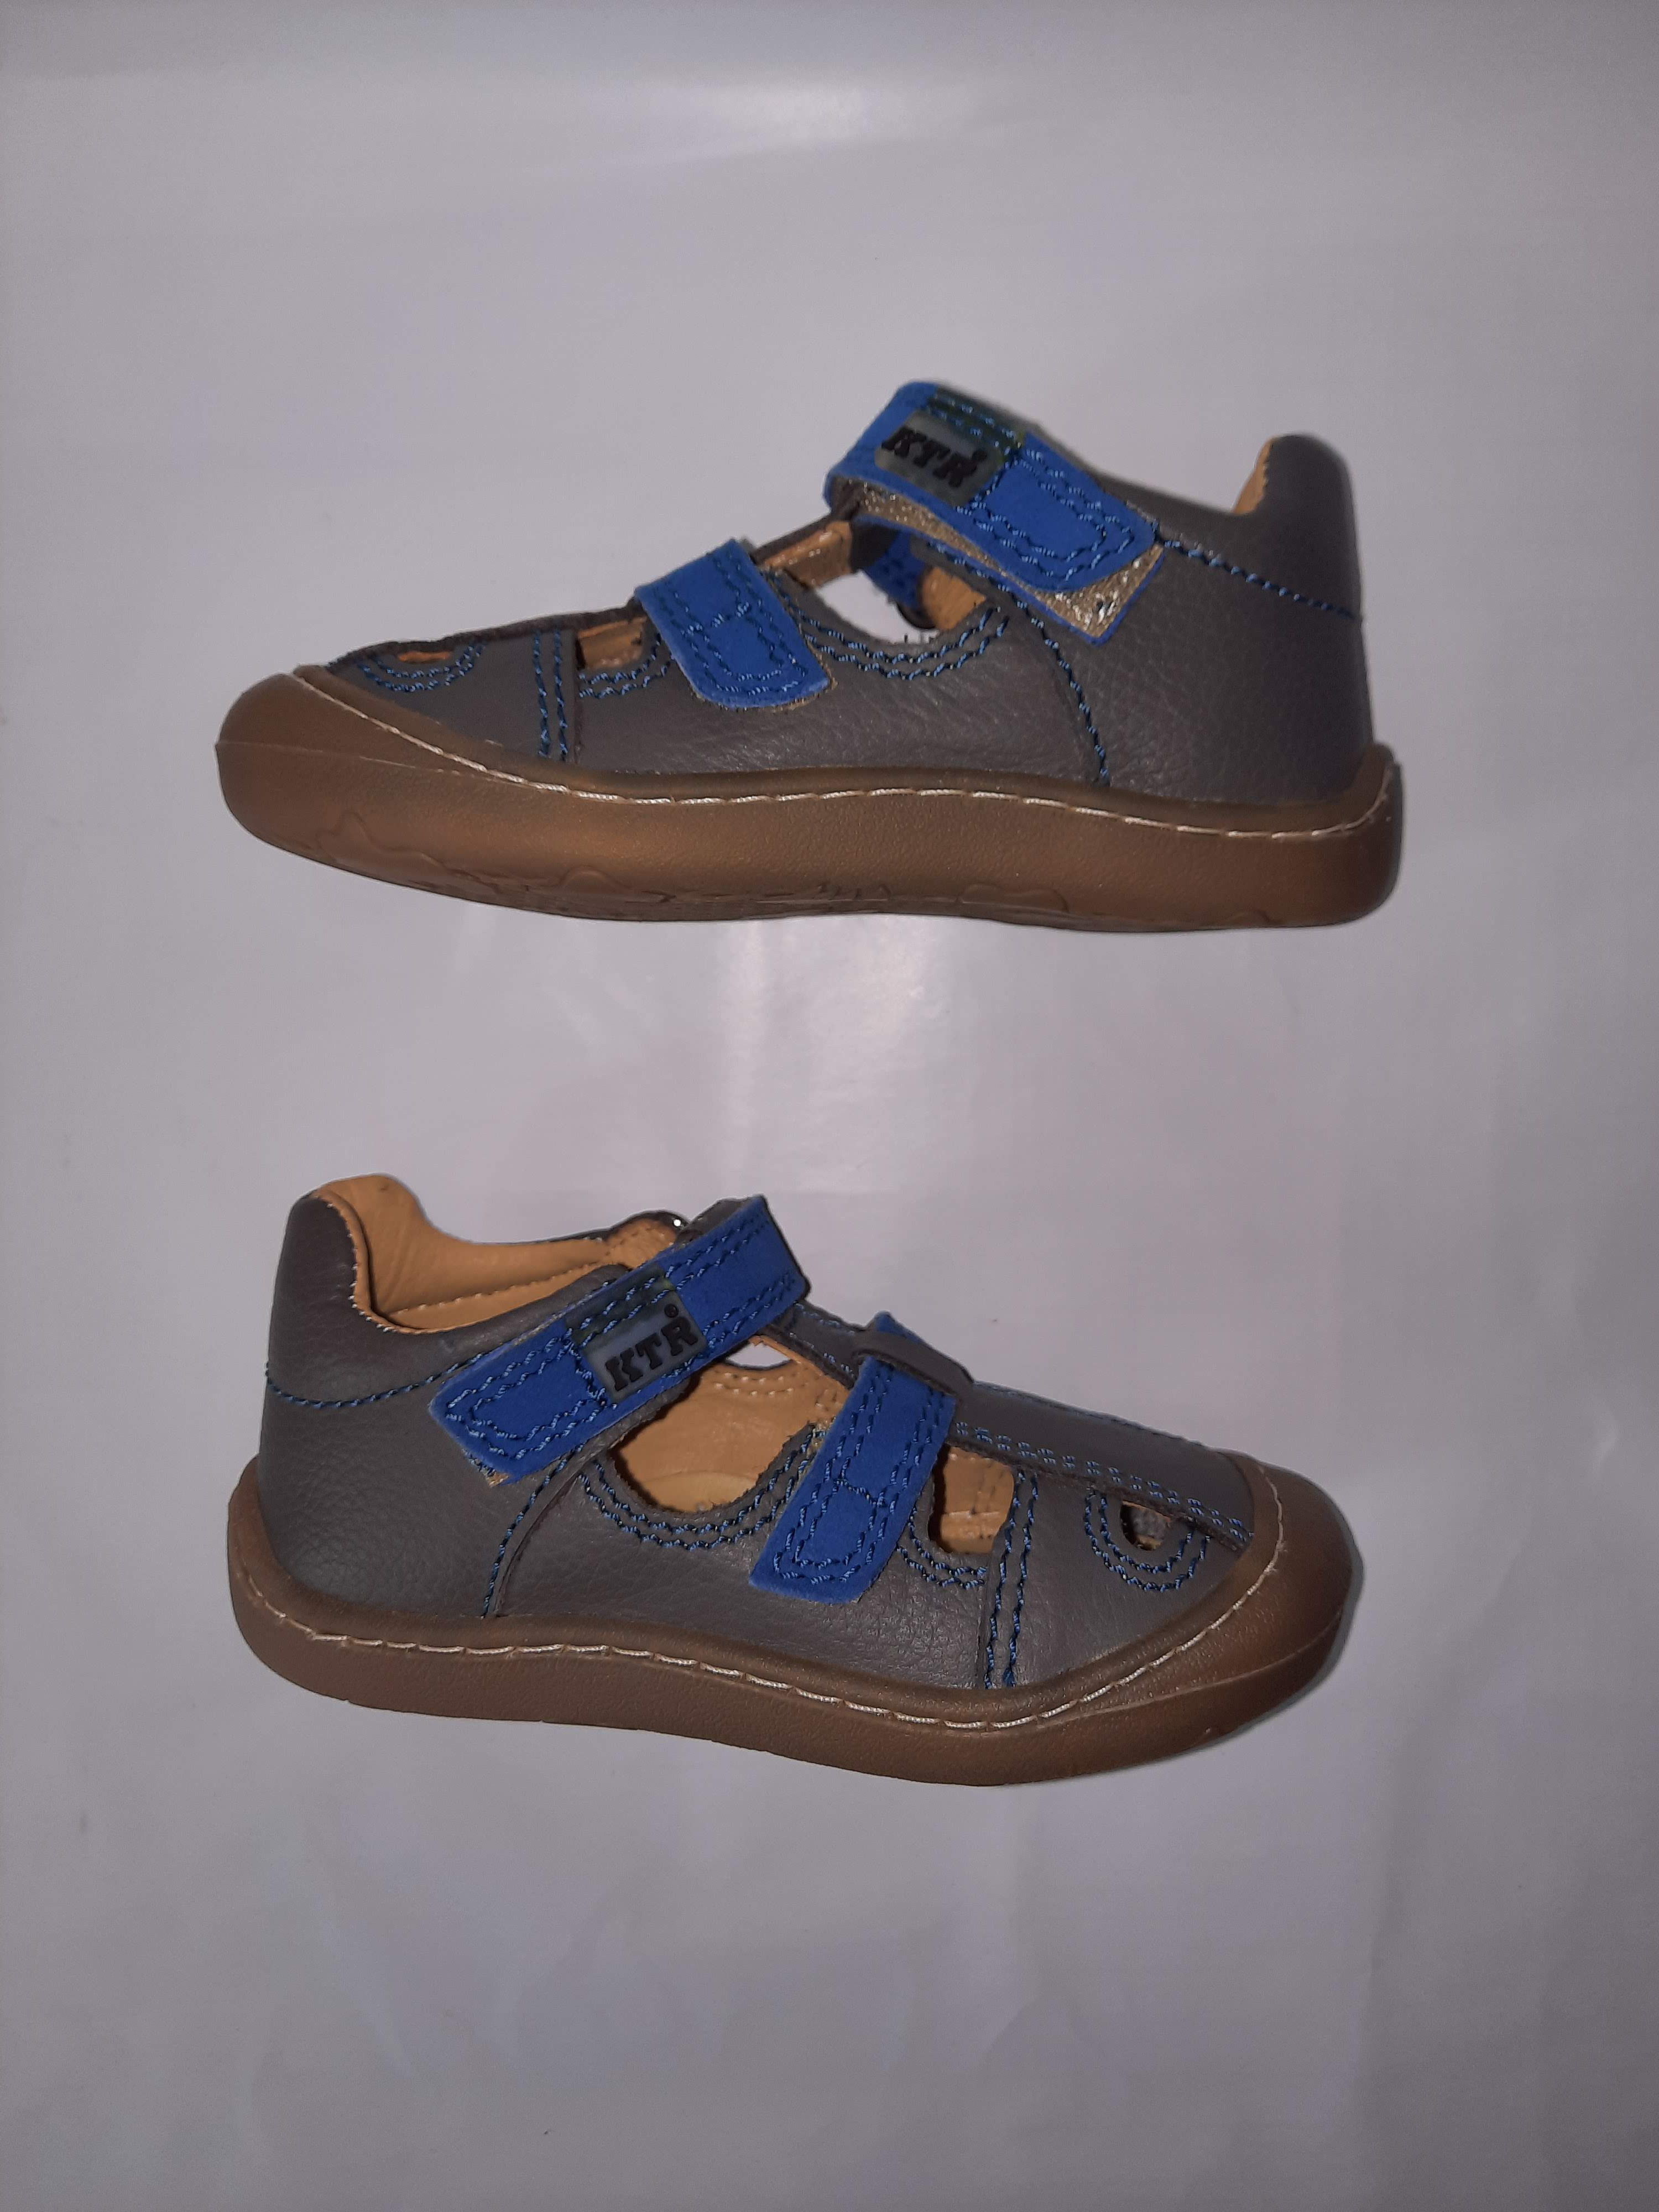 KTR® barefoot letní sandálky KENY šedá/modrá Velikost: 19